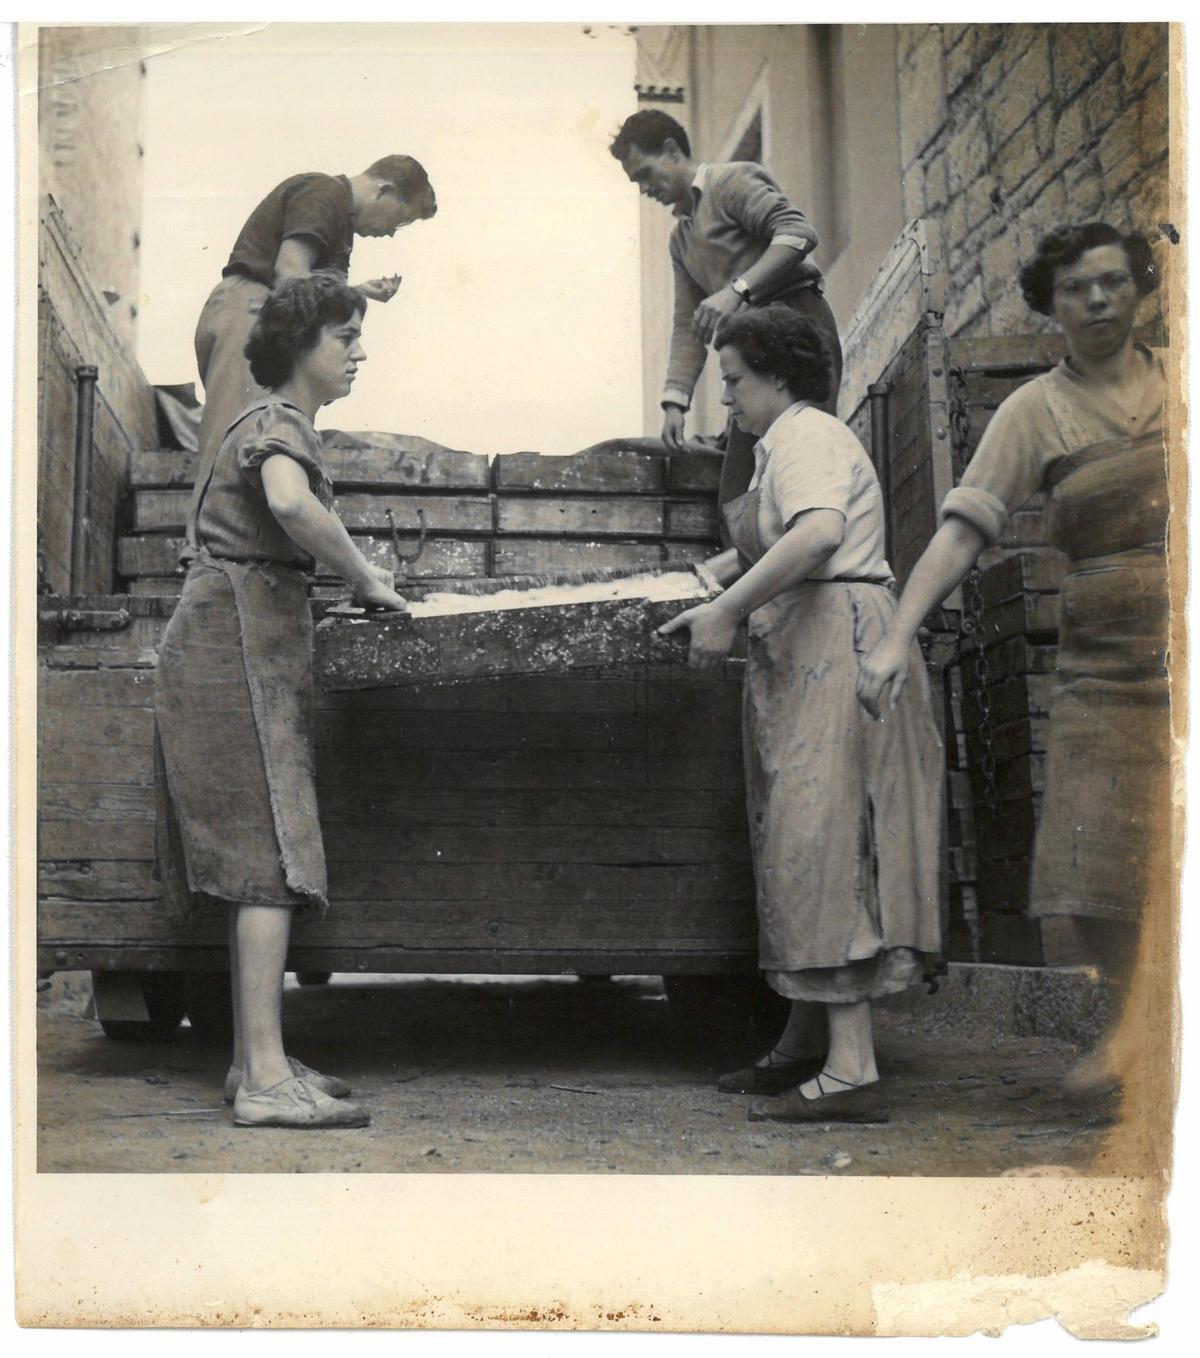 Carregant caixes de peix a la Fàbrica de salaons Solés, a la Platja, dècada de 1950. A l’esquerra, Lluïsa Sastre i Martí Solés Andreu. A la dreta, Enriqueta Rúbies, Marina Granollers i Narcís Graboleda “Romaguera”